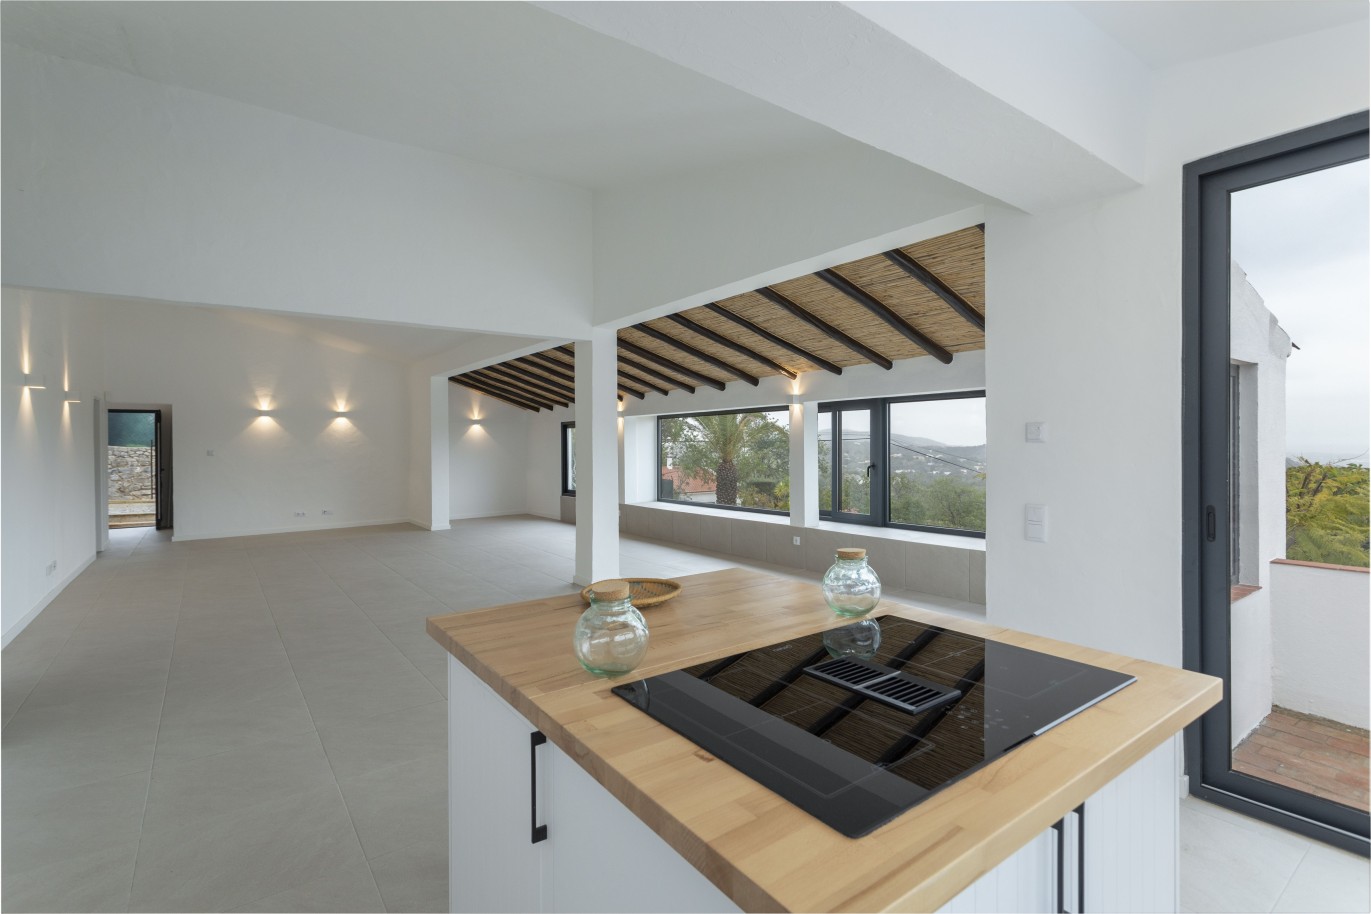 3 bedroom villa with sea view and pool, for sale in Santa Barbara, Algarve_245048